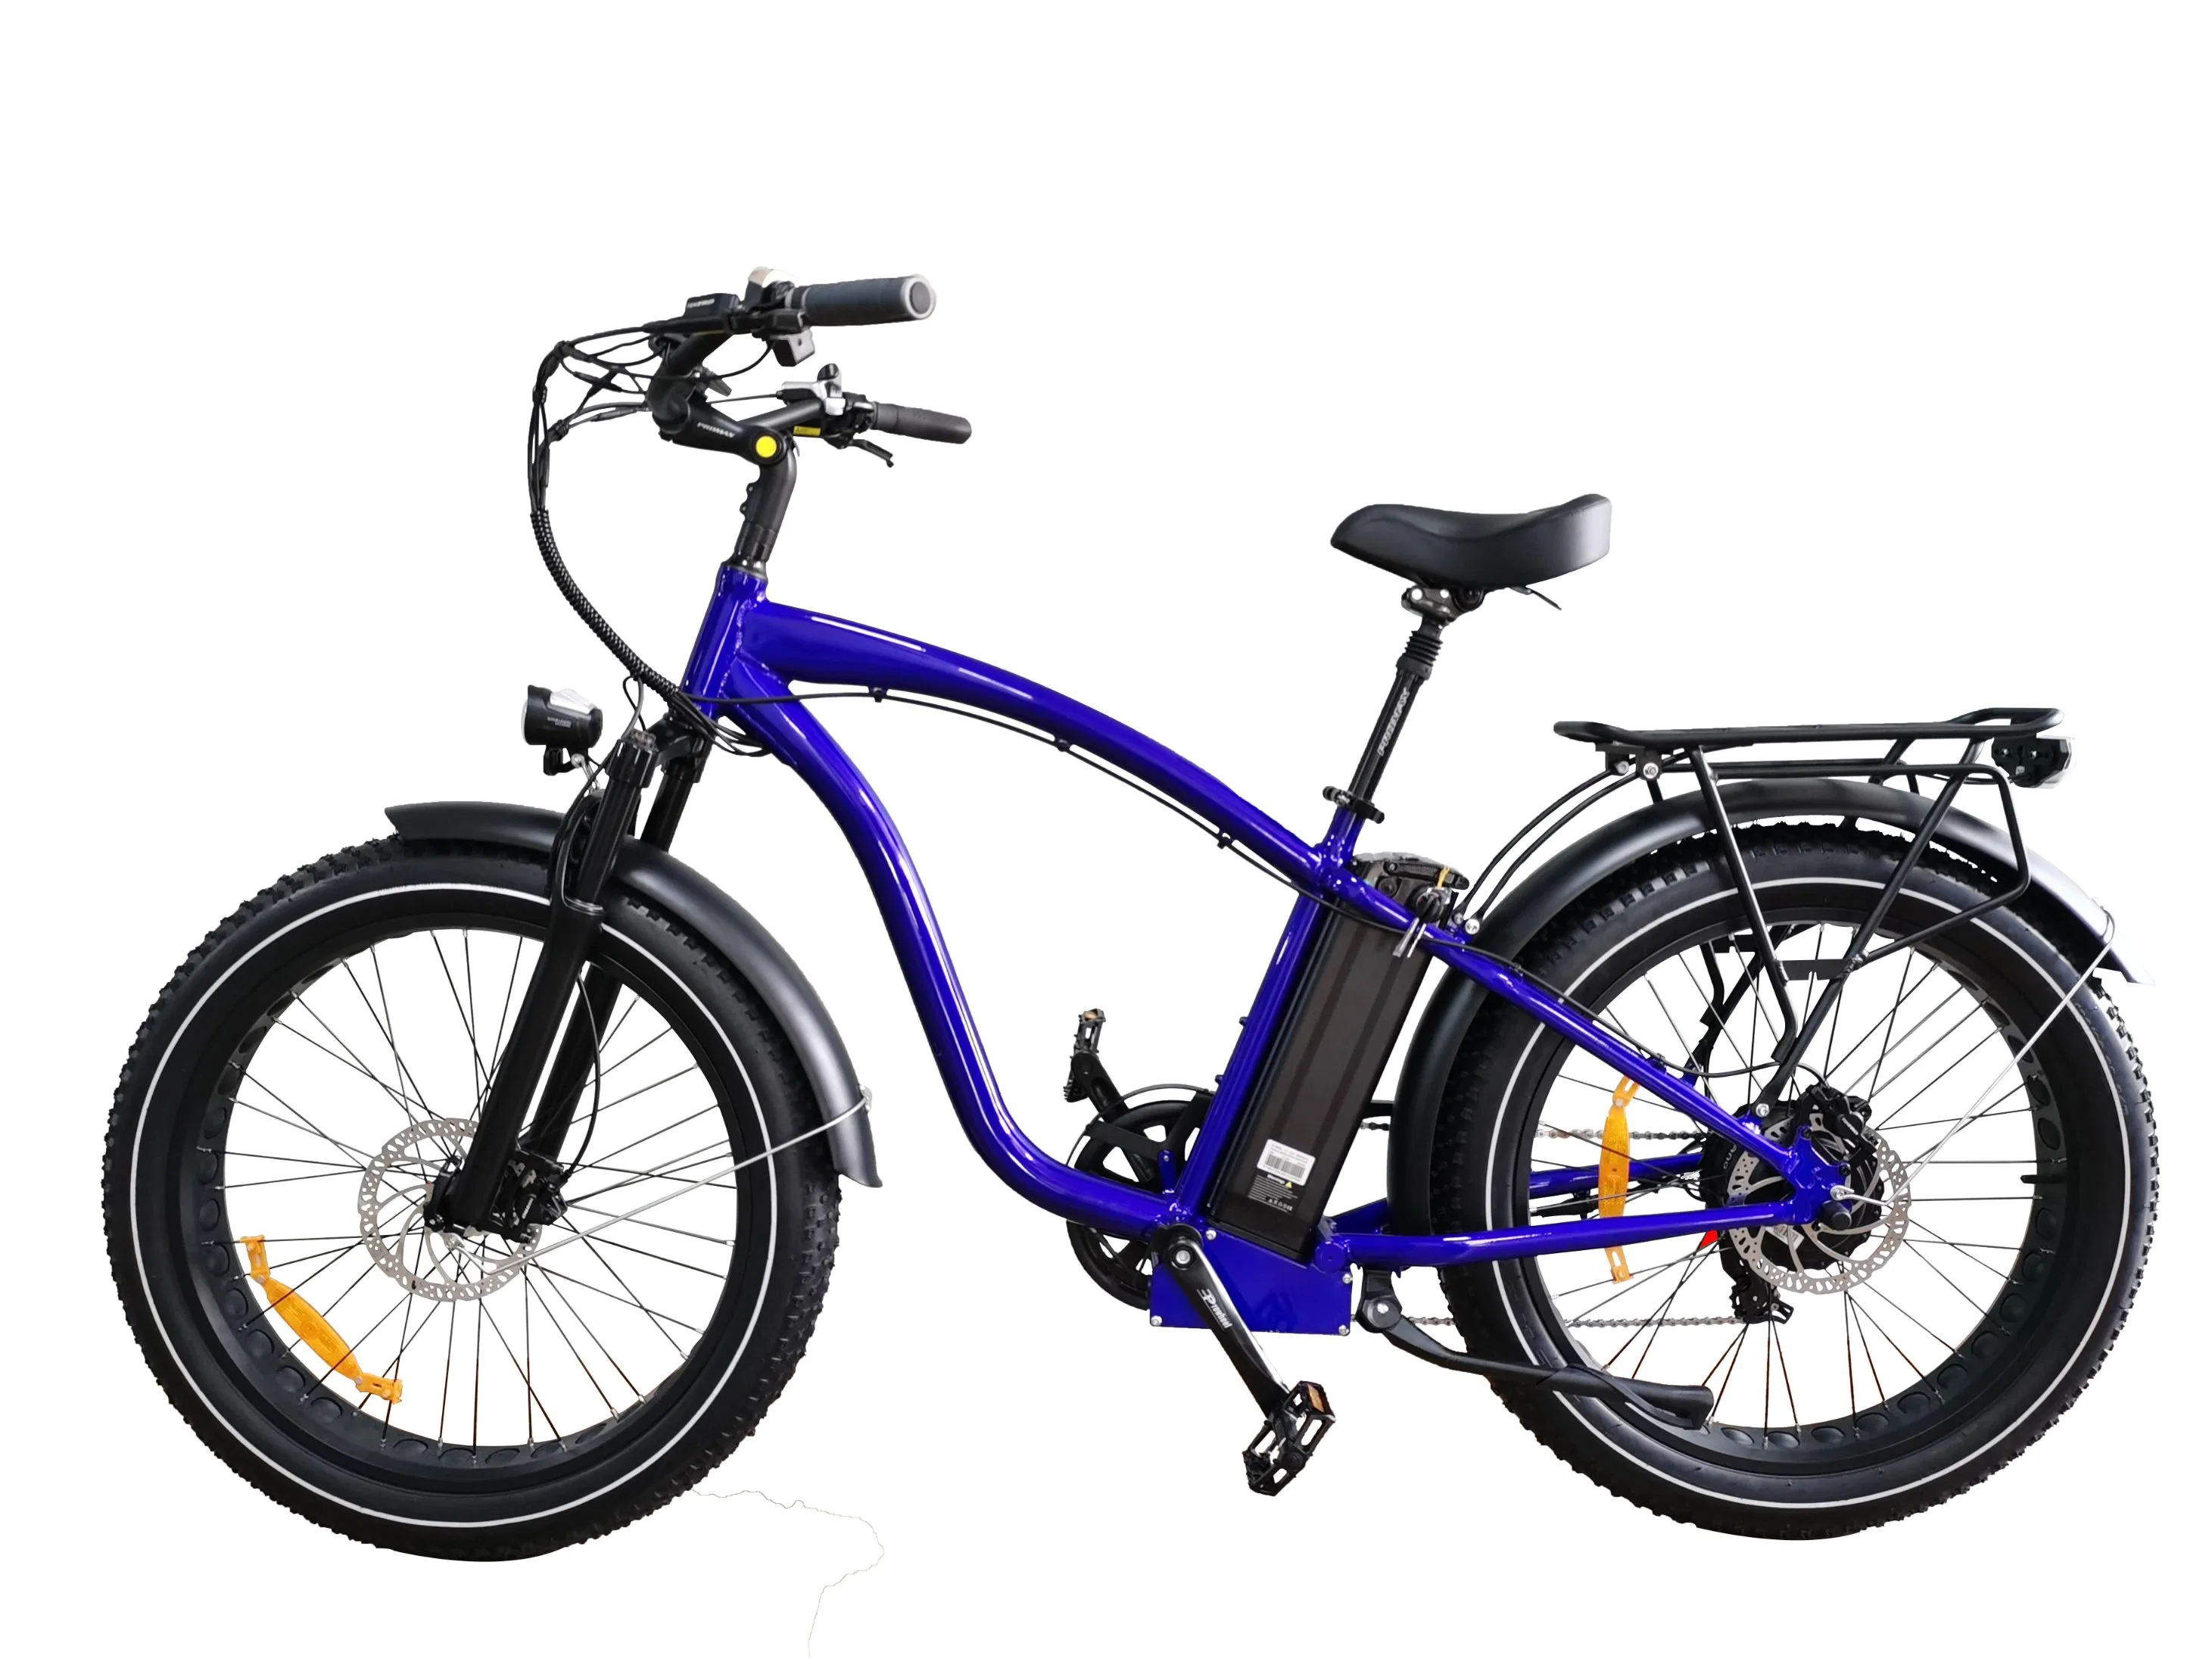 Nouveau style Queene rapide d'Enduro en alliage aluminium moteurs arrière avec ce vélo électrique hybride